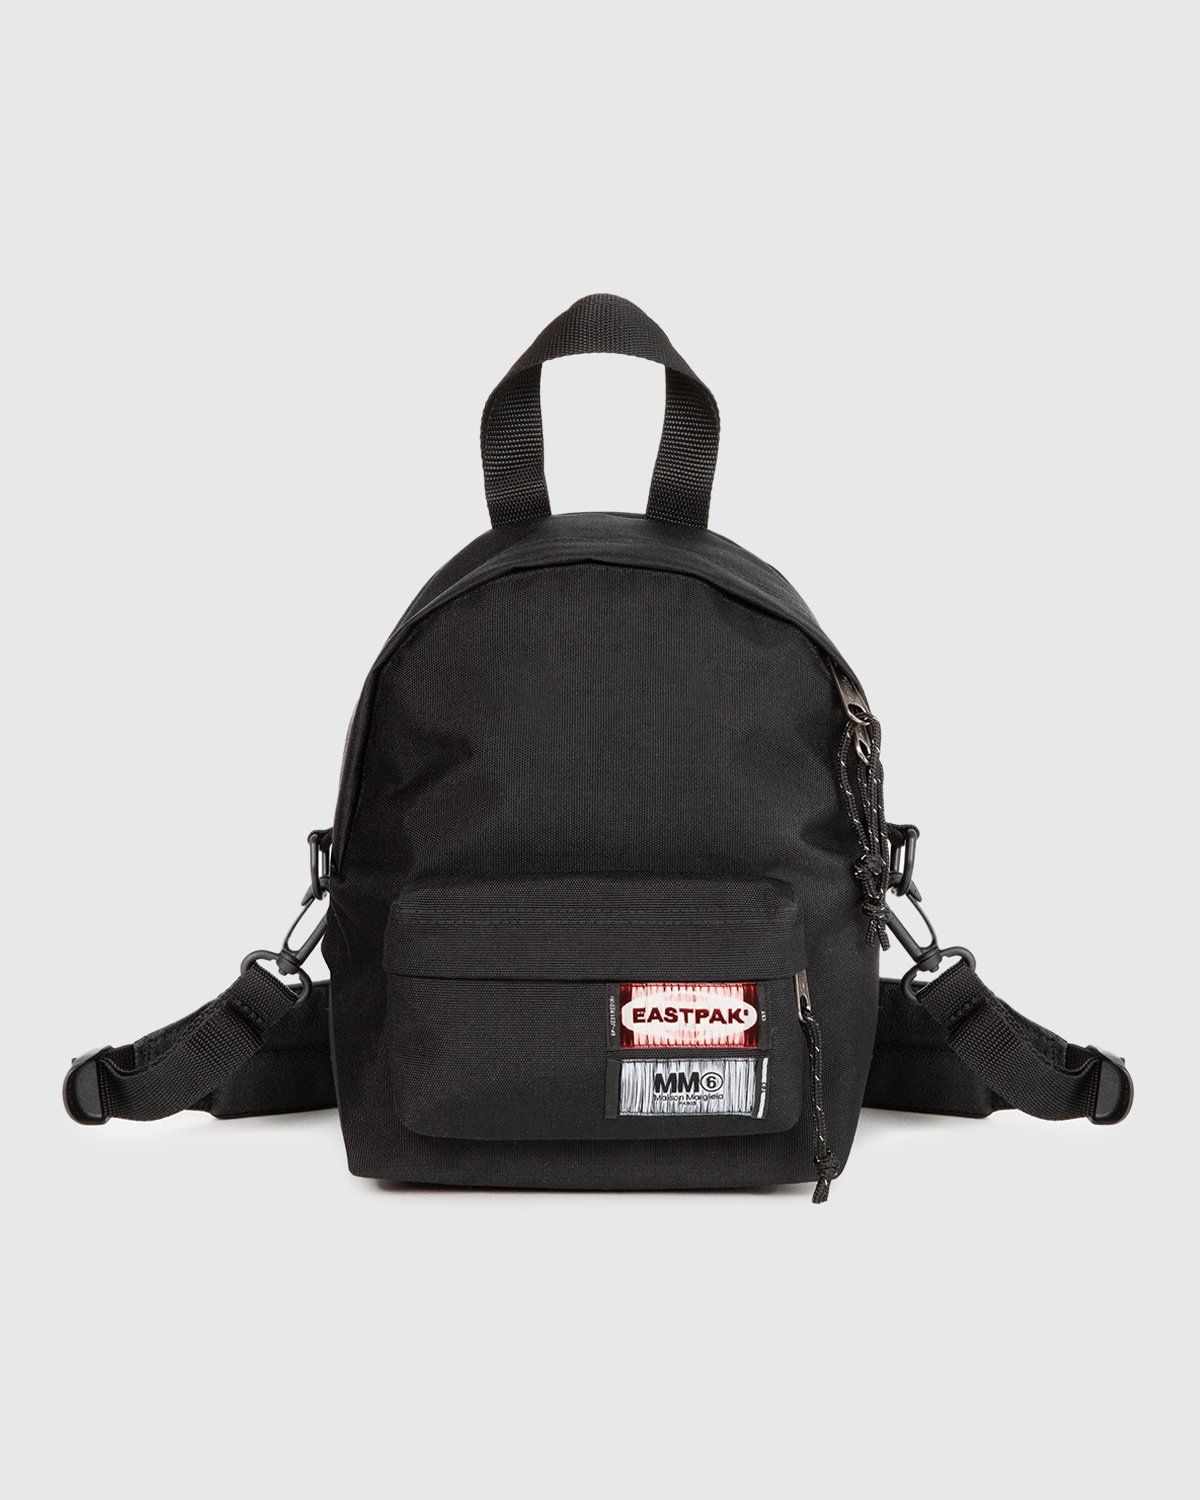 MM6 Maison Margiela x Eastpak – Shoulder Bag Black - Shoulder Bags - Black - Image 1